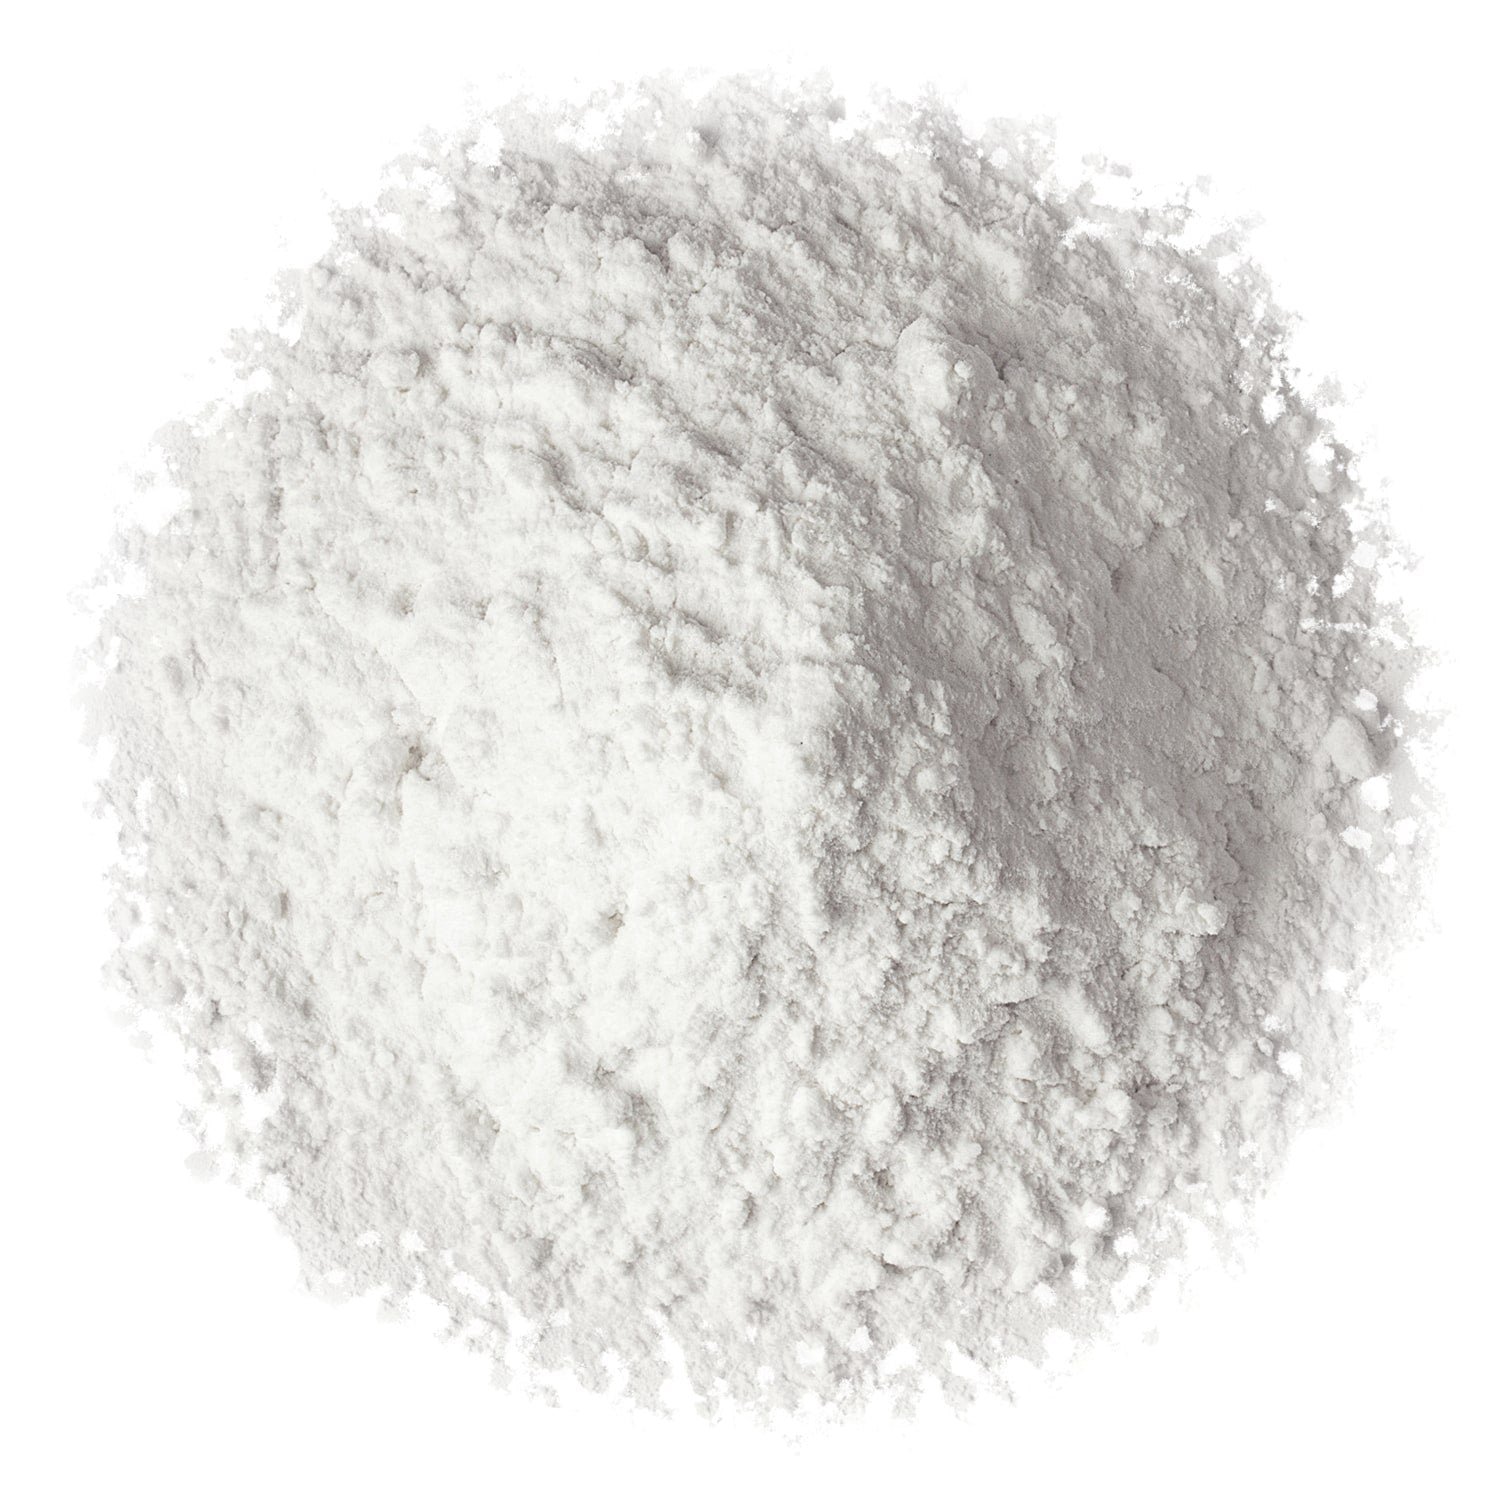 Sodium Cocoyl Isethionate SCI (Powder)